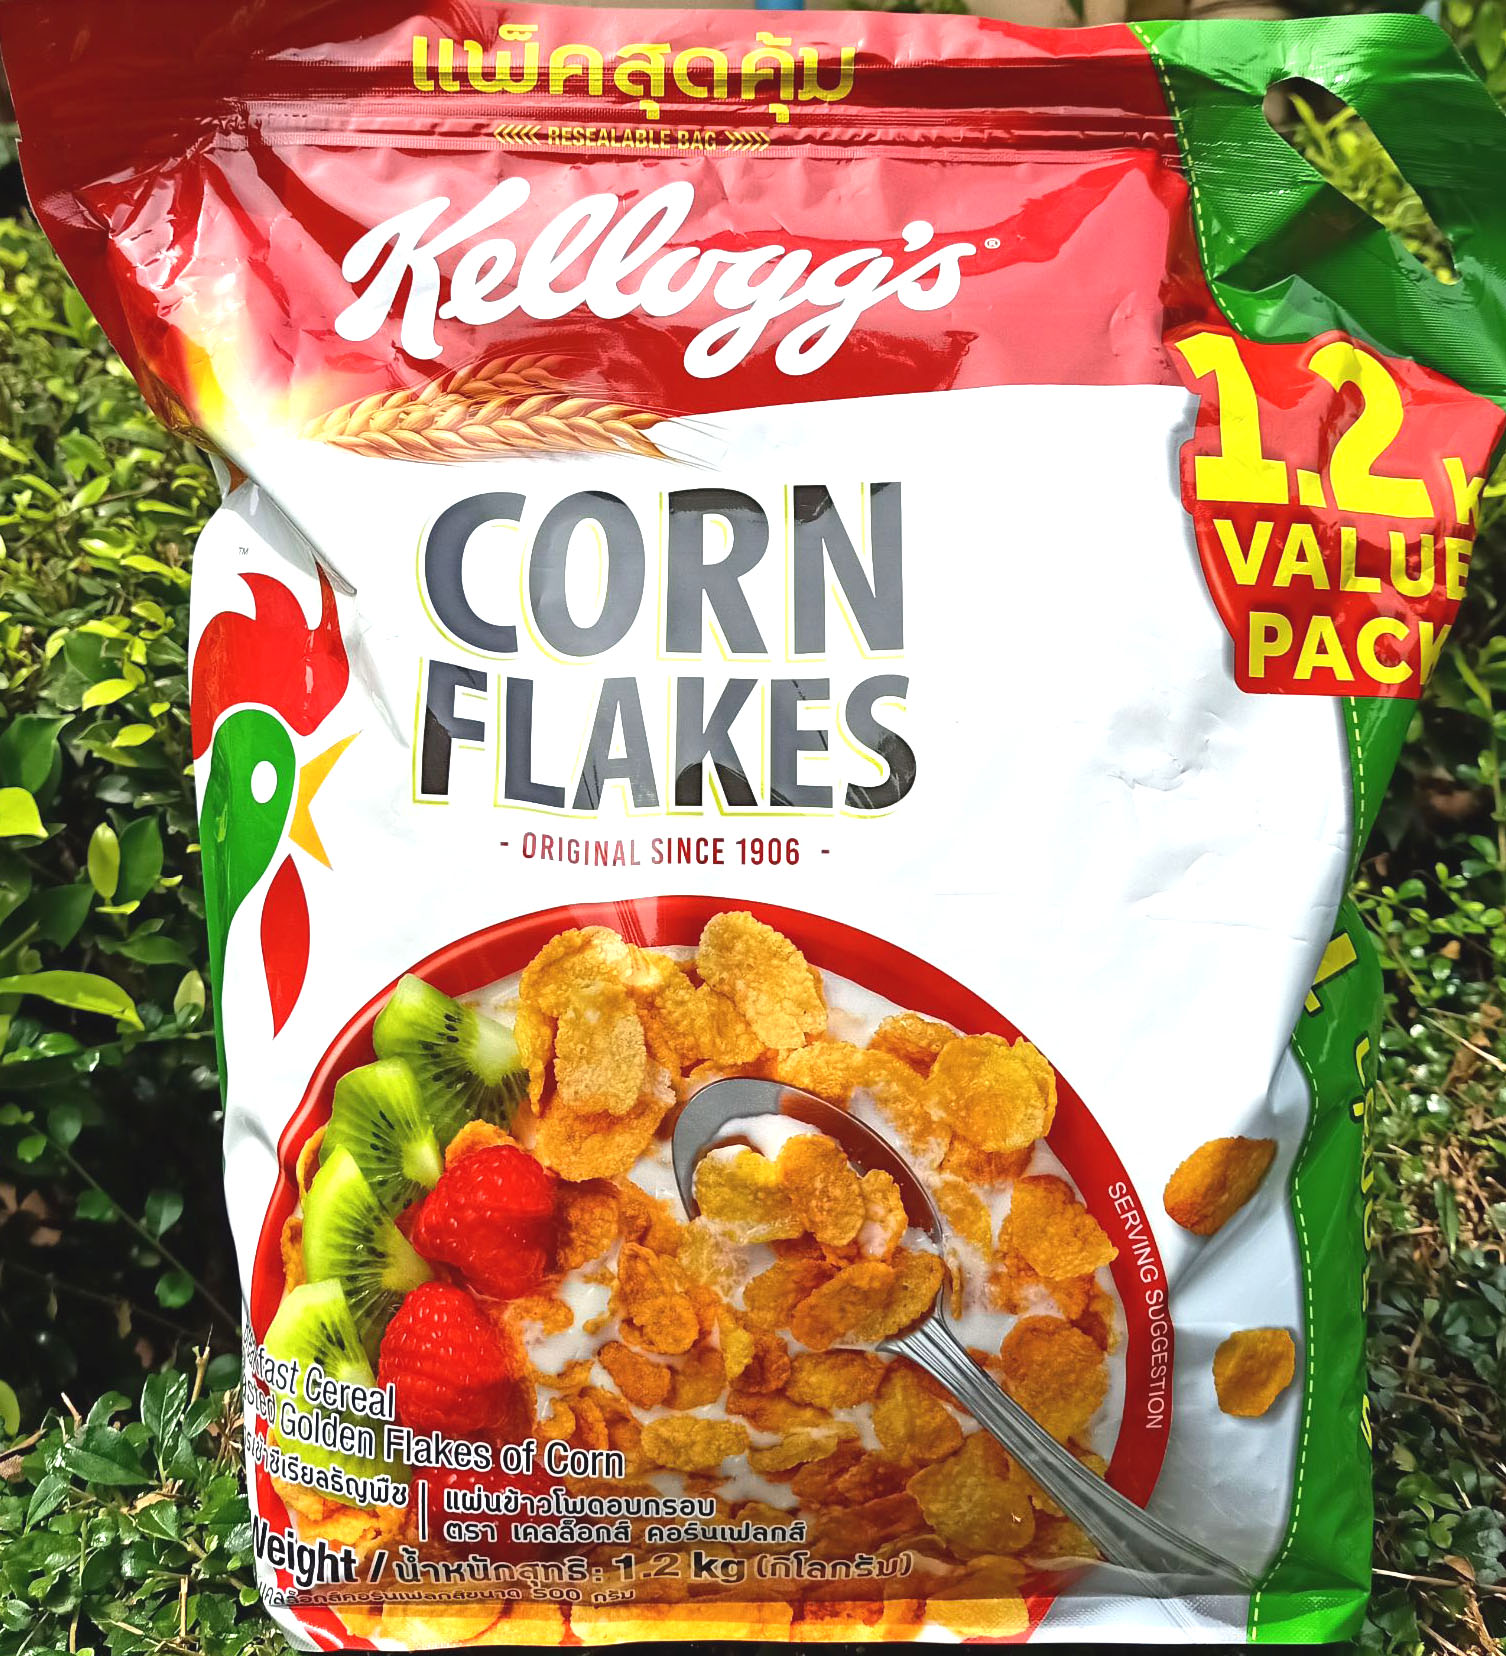 เคลล็อกส์ คอร์นเฟลกส์ ขนาด 1.2 กิโลกรัม แบบถุง  Kellogg's Cornflakes 1.2 kg.